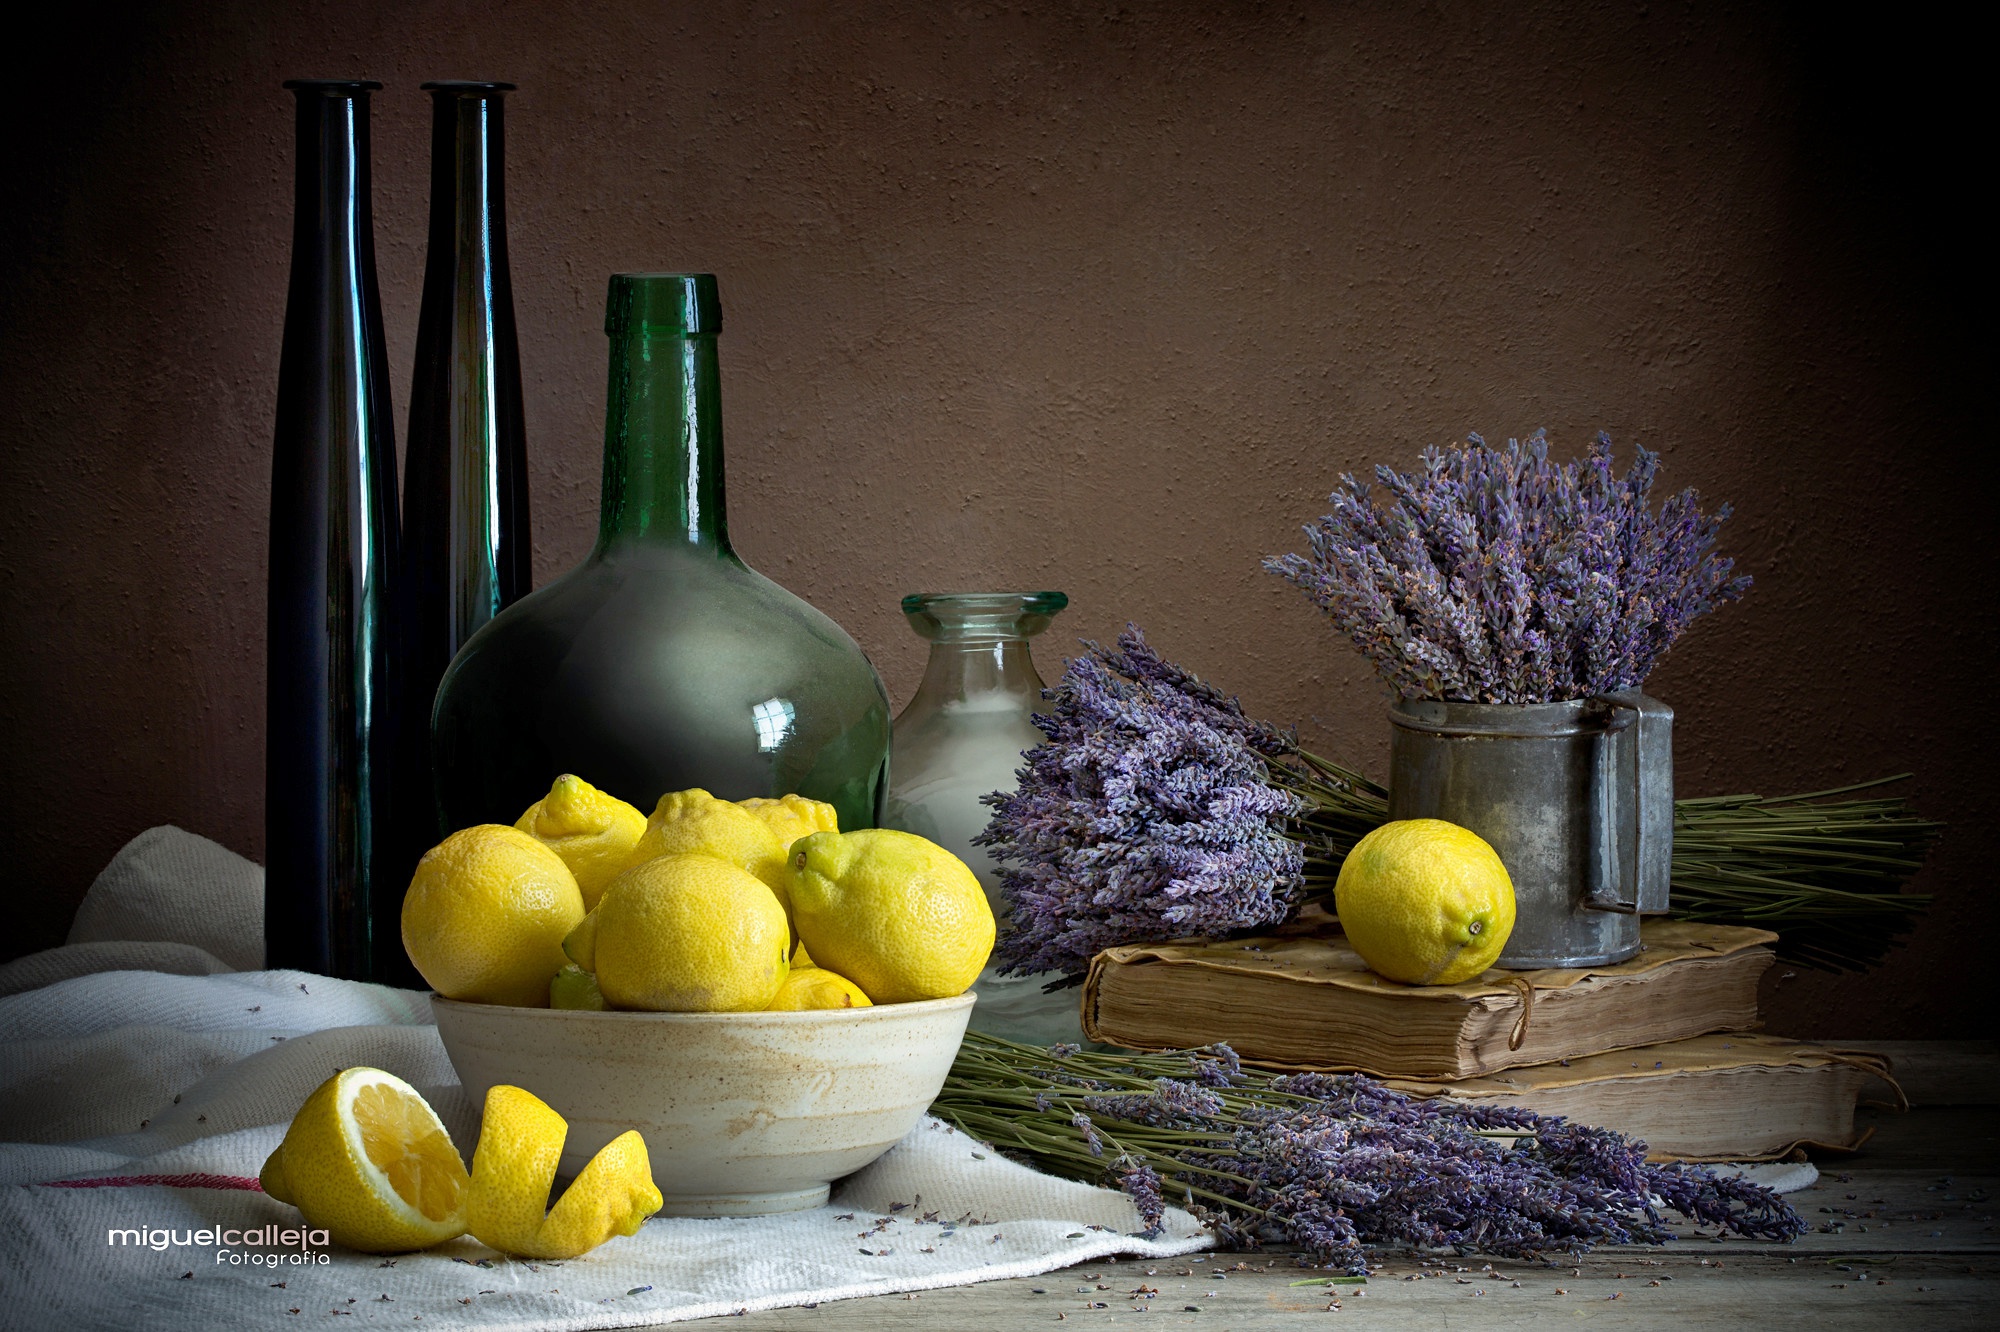 Free download wallpaper Food, Still Life, Lemon, Lavender on your PC desktop